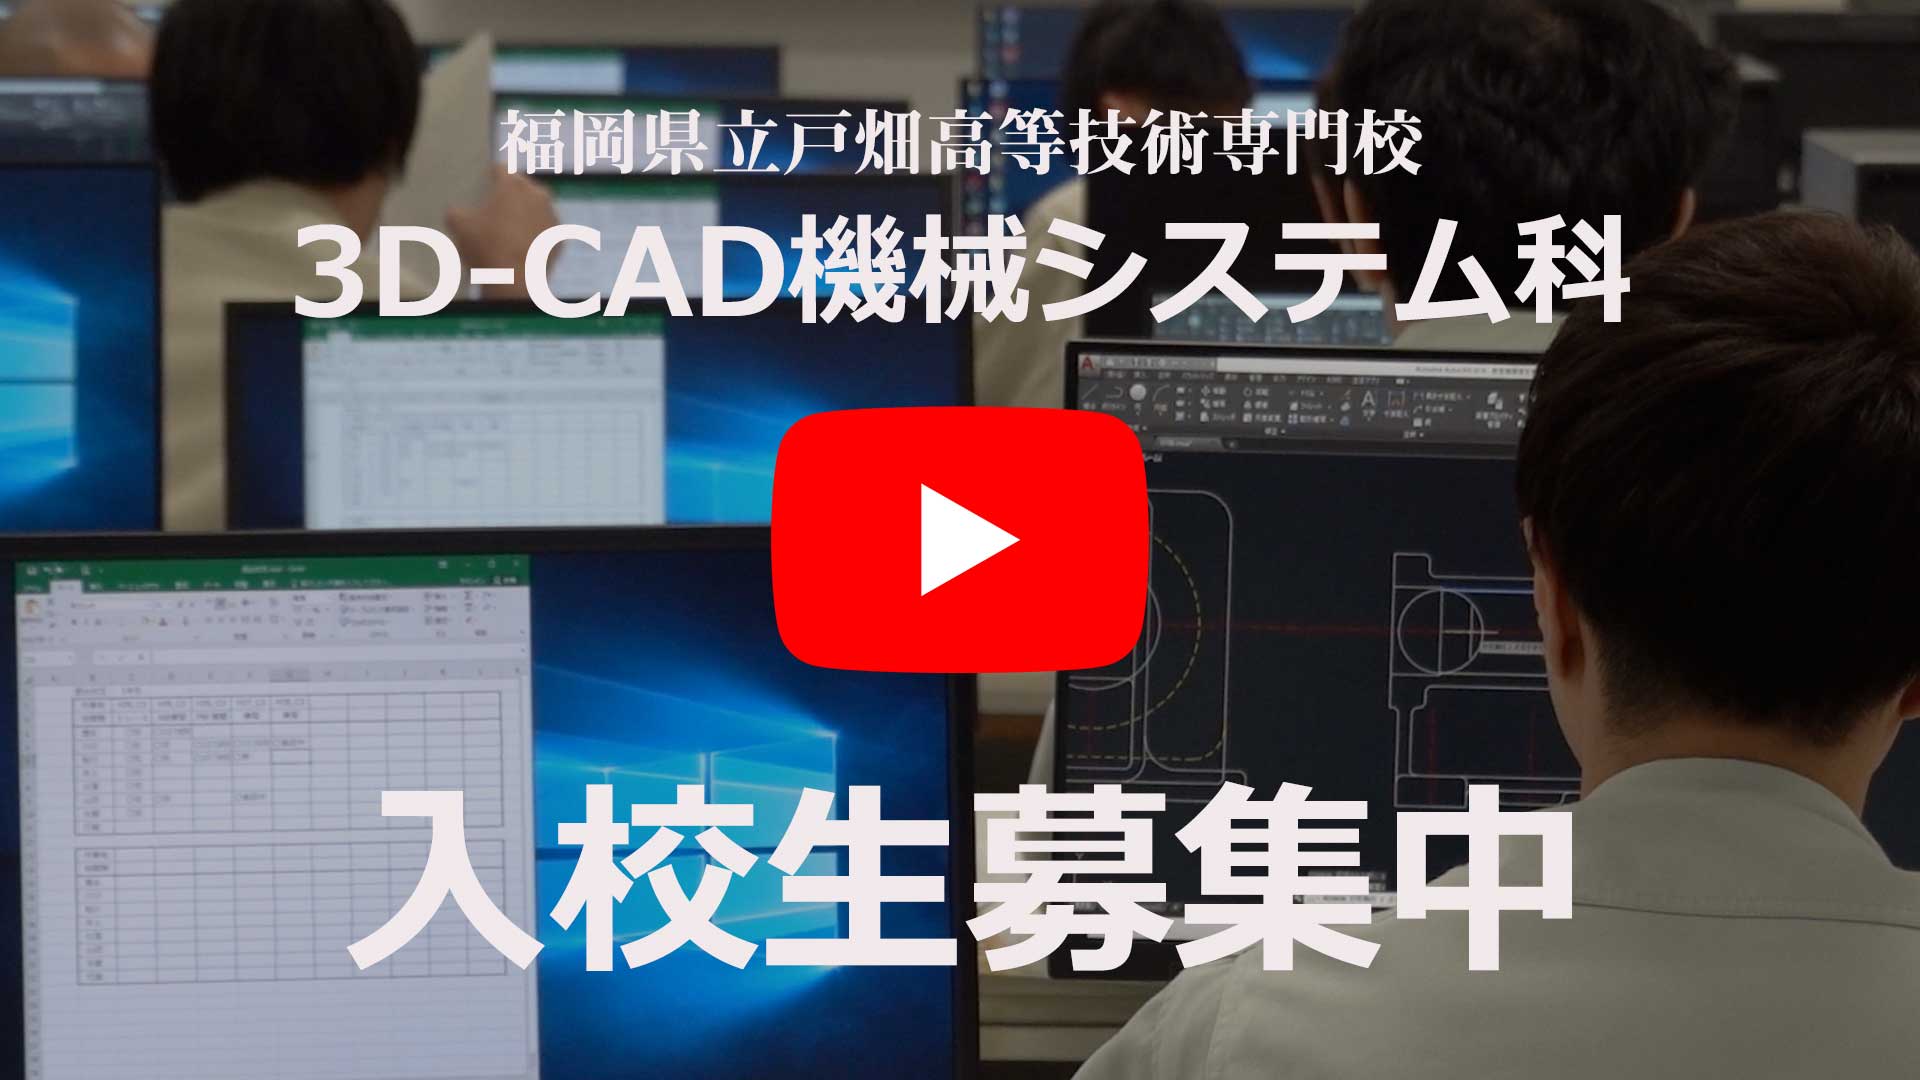 戸畑高等技術専門校「3D-CADシステム科」のYouTube動画へ